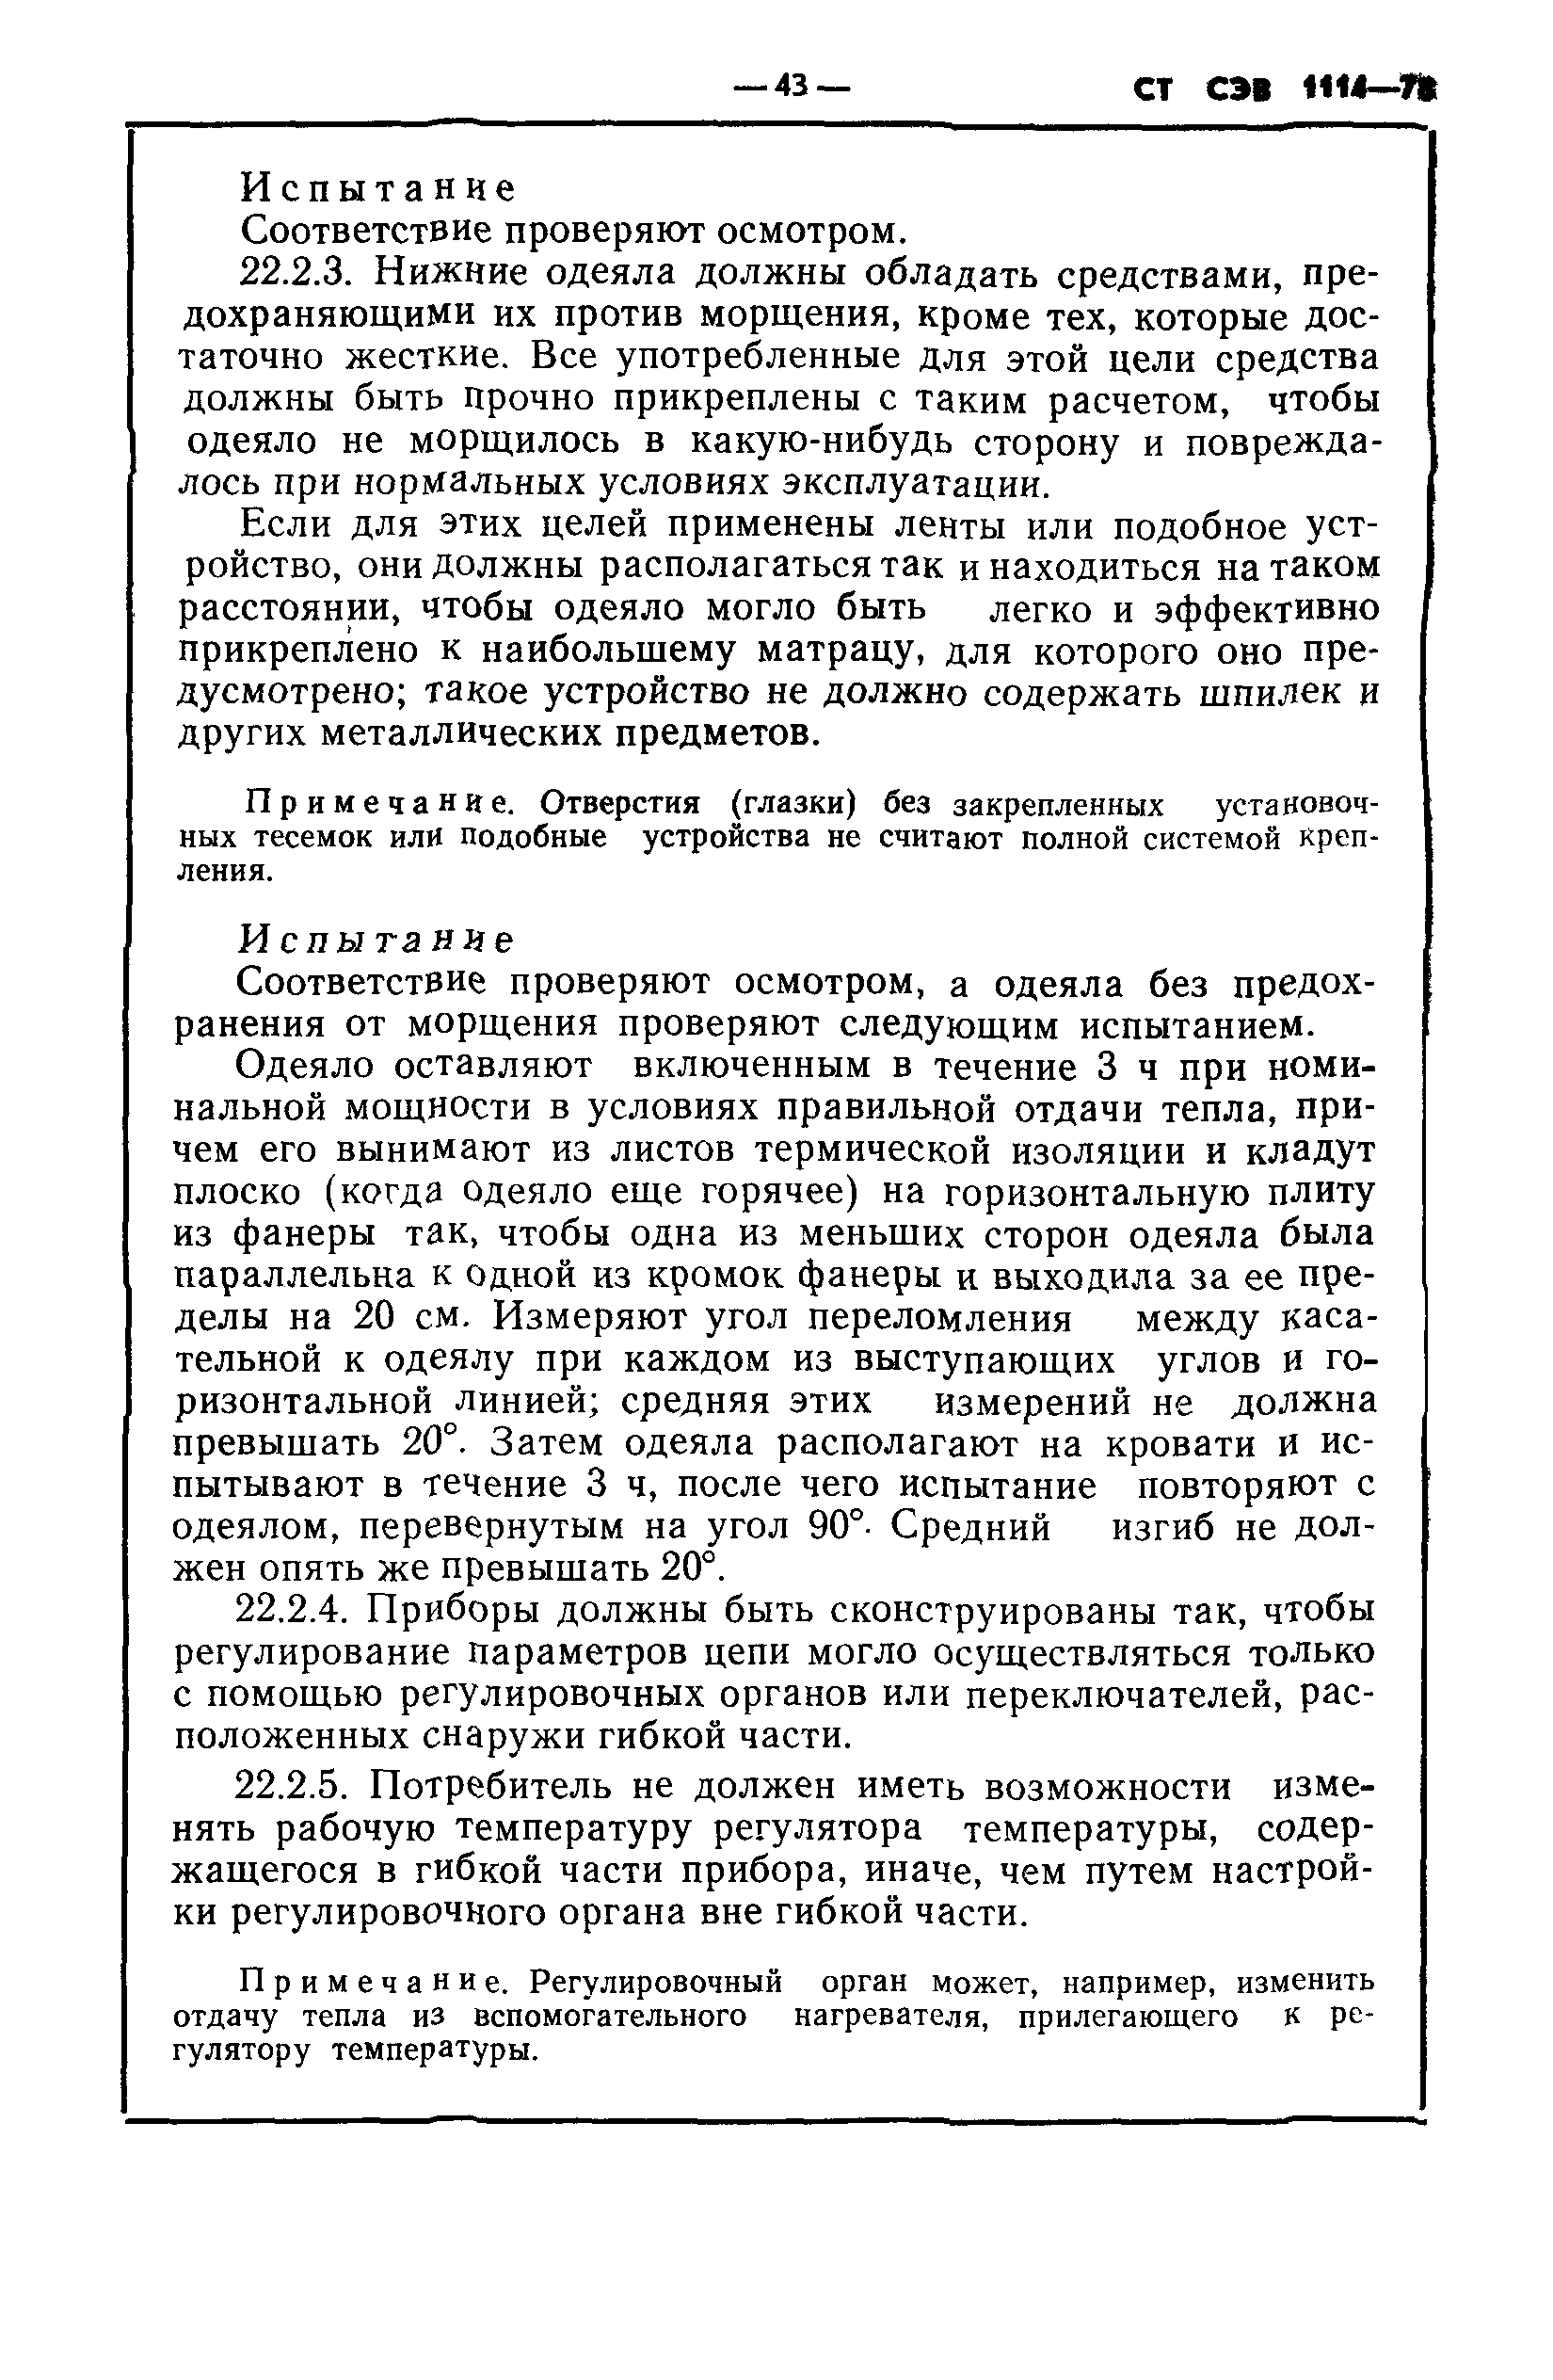 СТ СЭВ 1114-78